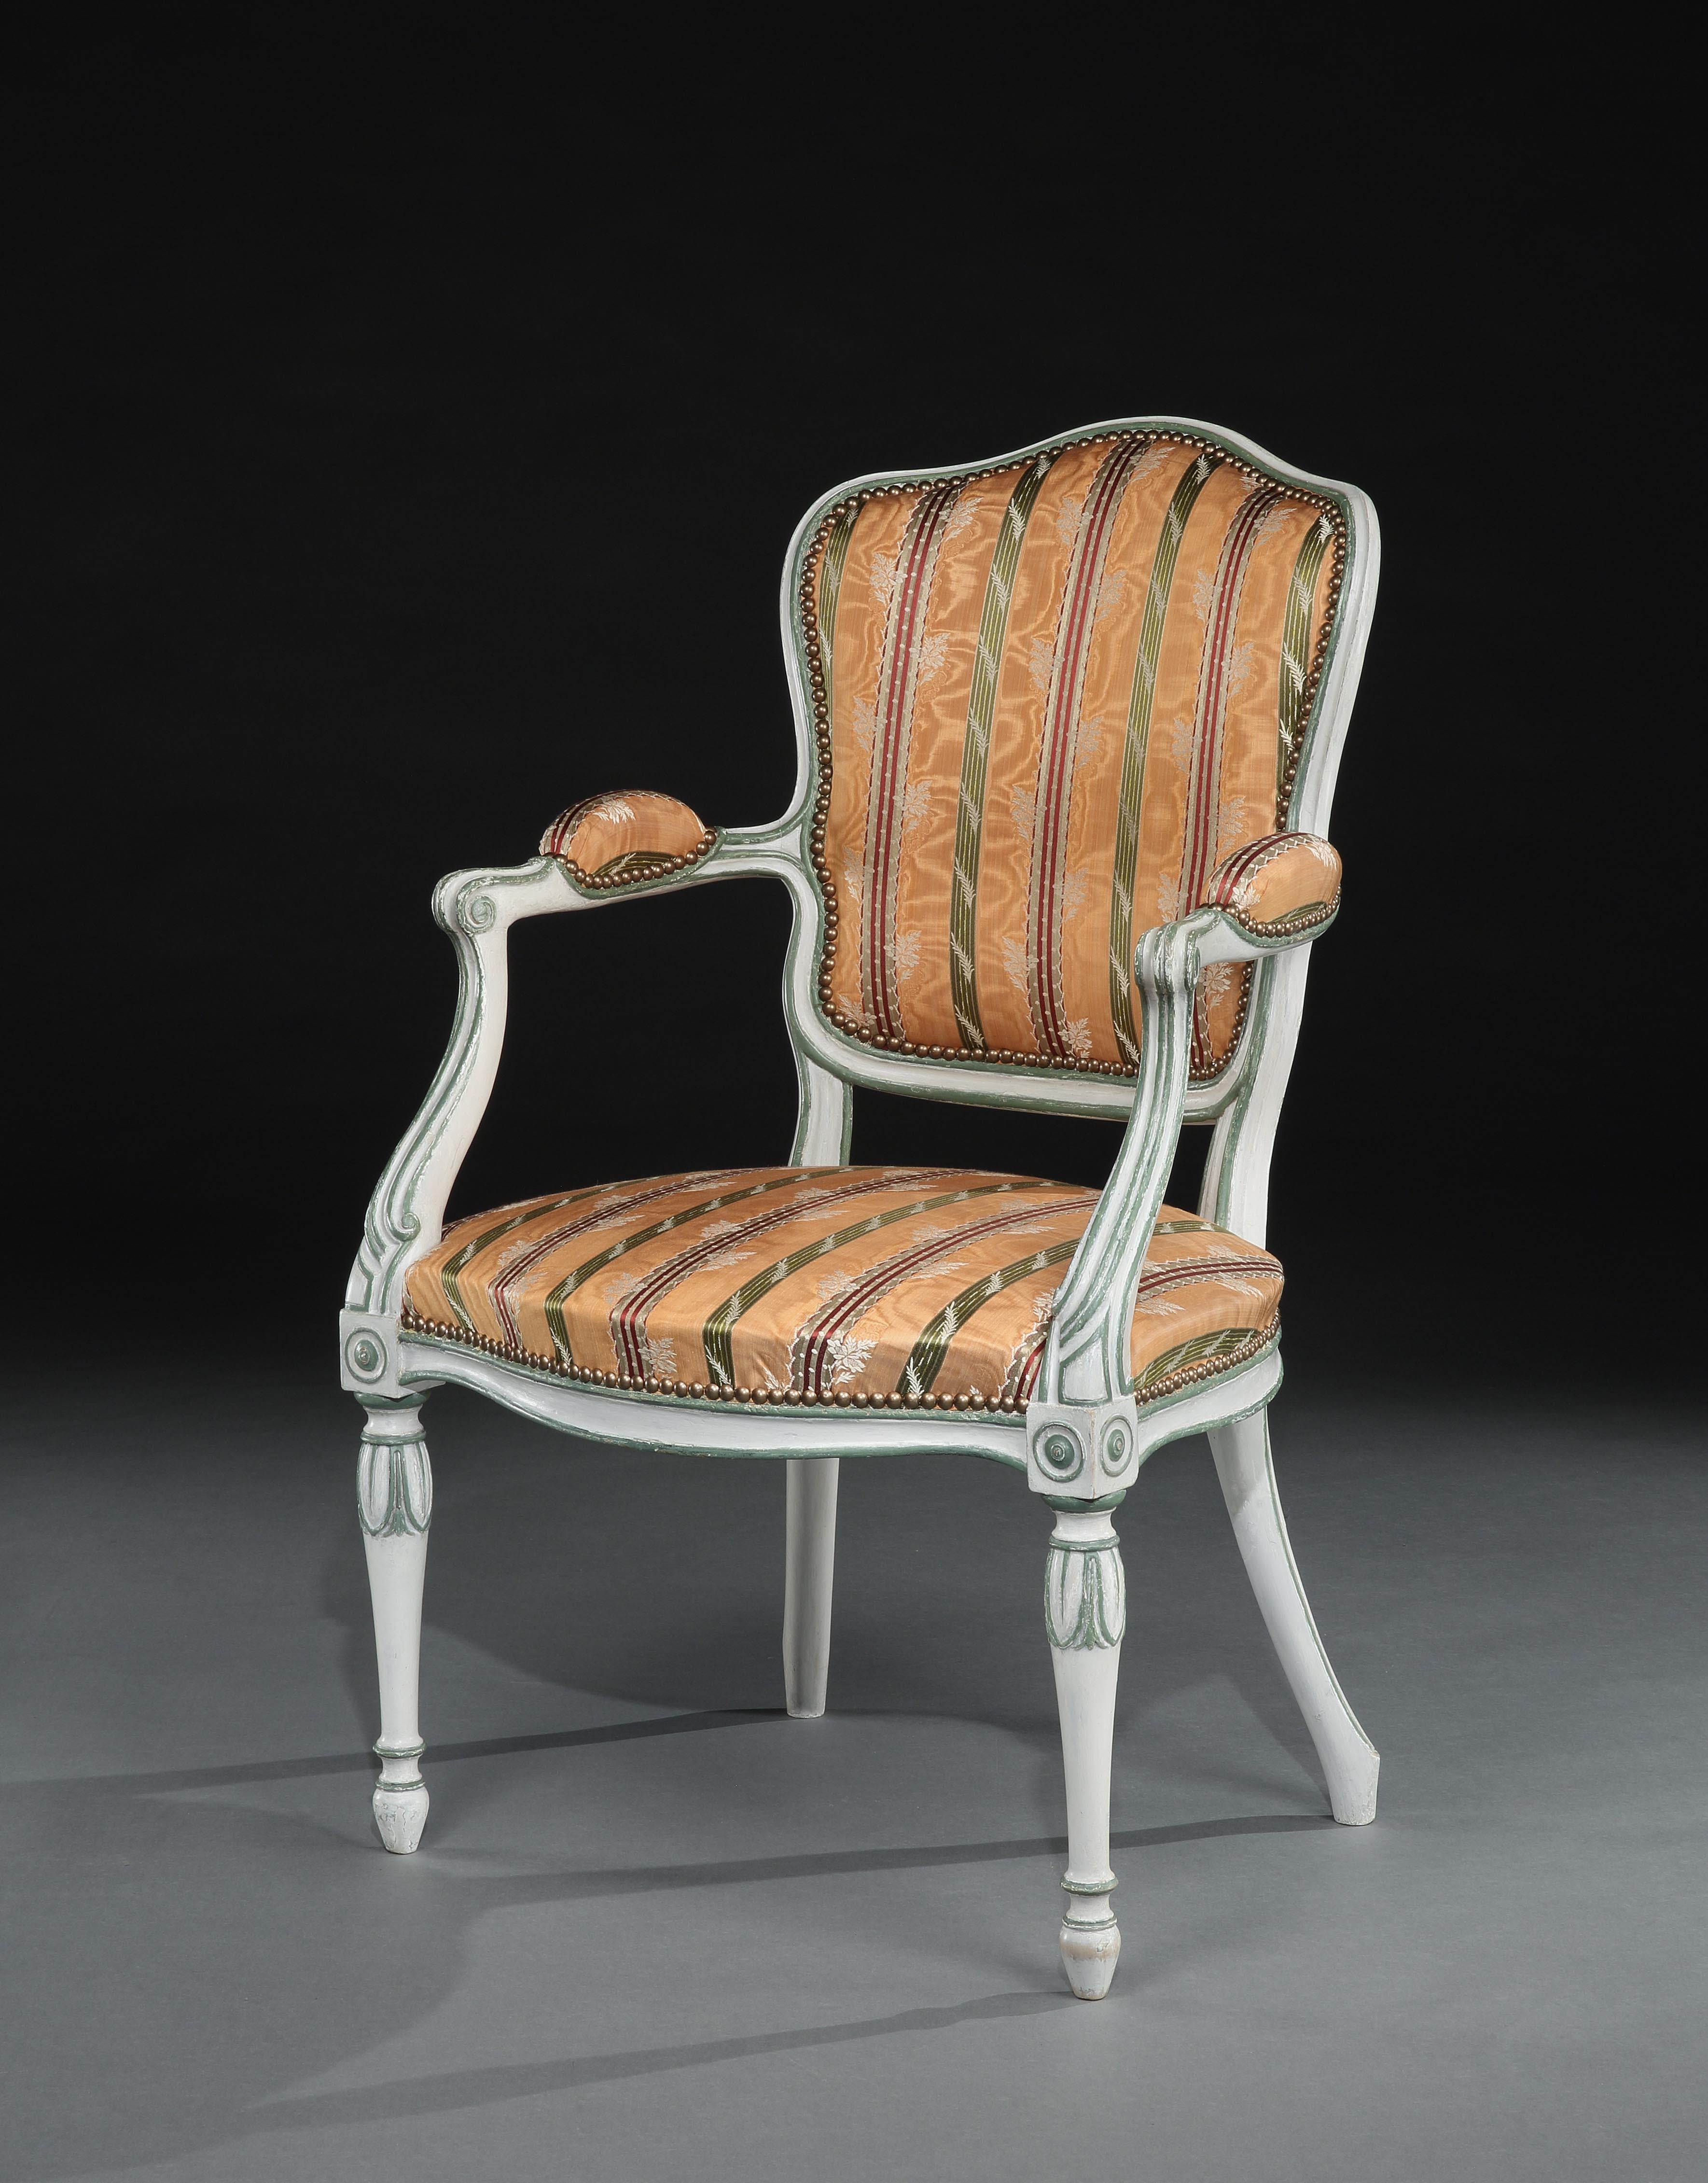 Ein feiner, bemalter offener Sessel von George III. im französischen Hepplewhite-Stil. Die schildförmige Rückenlehne, der Serpentinen-Sitz und die Armlehnen sind gepolstert. Das Gestell des Stuhls mit kanalisierten Details ist cremefarben mit grünen